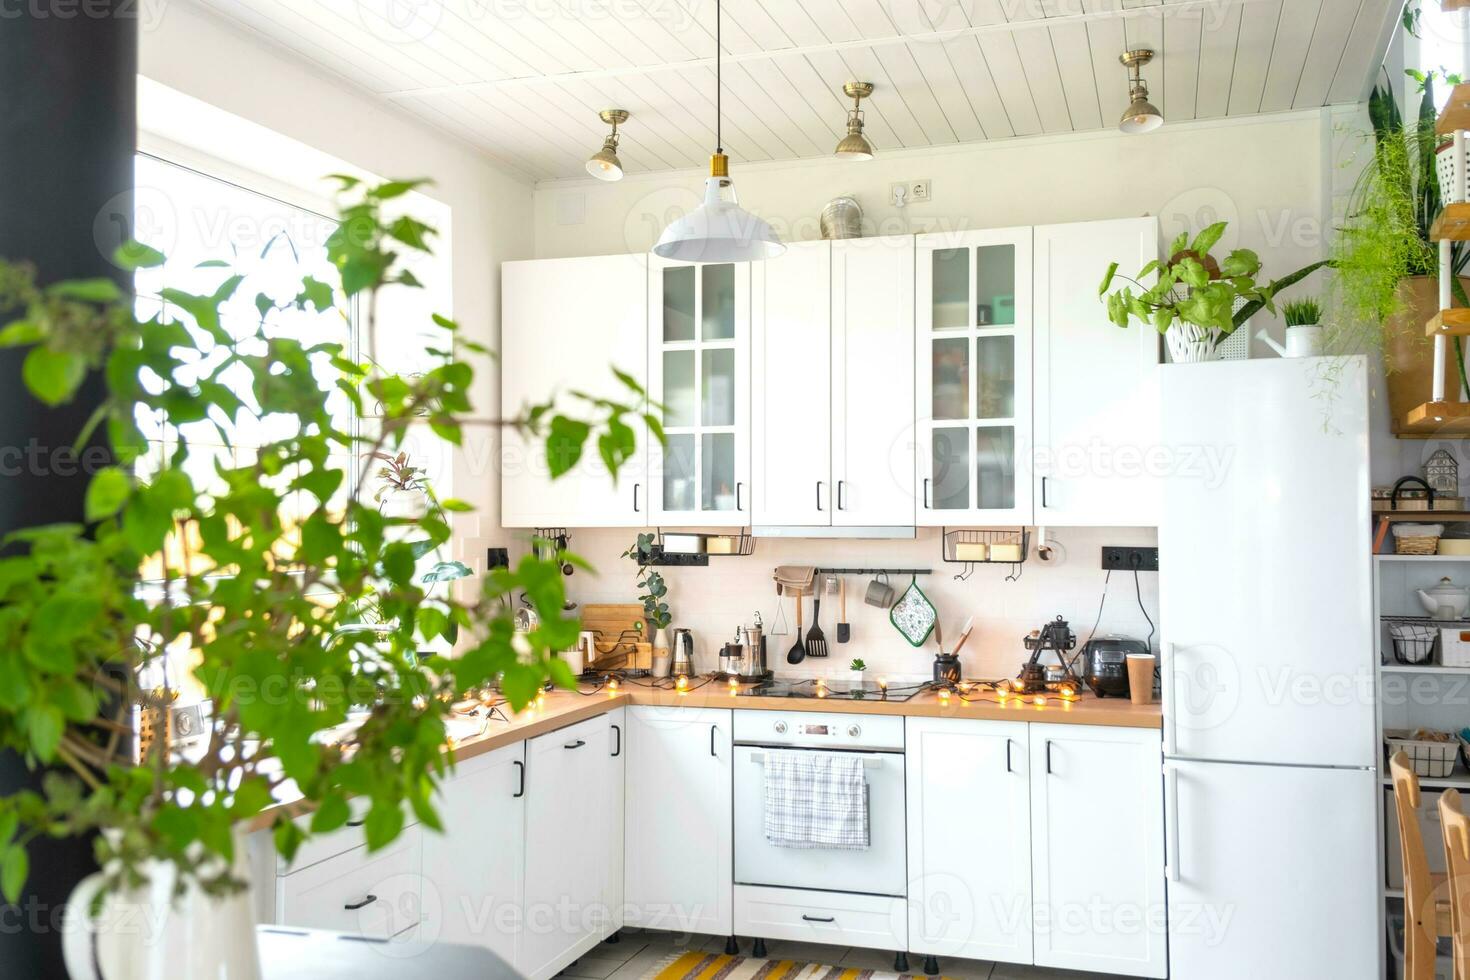 licht wit modern rustiek keuken versierd met ingemaakt planten, loft-stijl keuken gebruiksvoorwerpen. interieur van een huis met thuisplanten foto